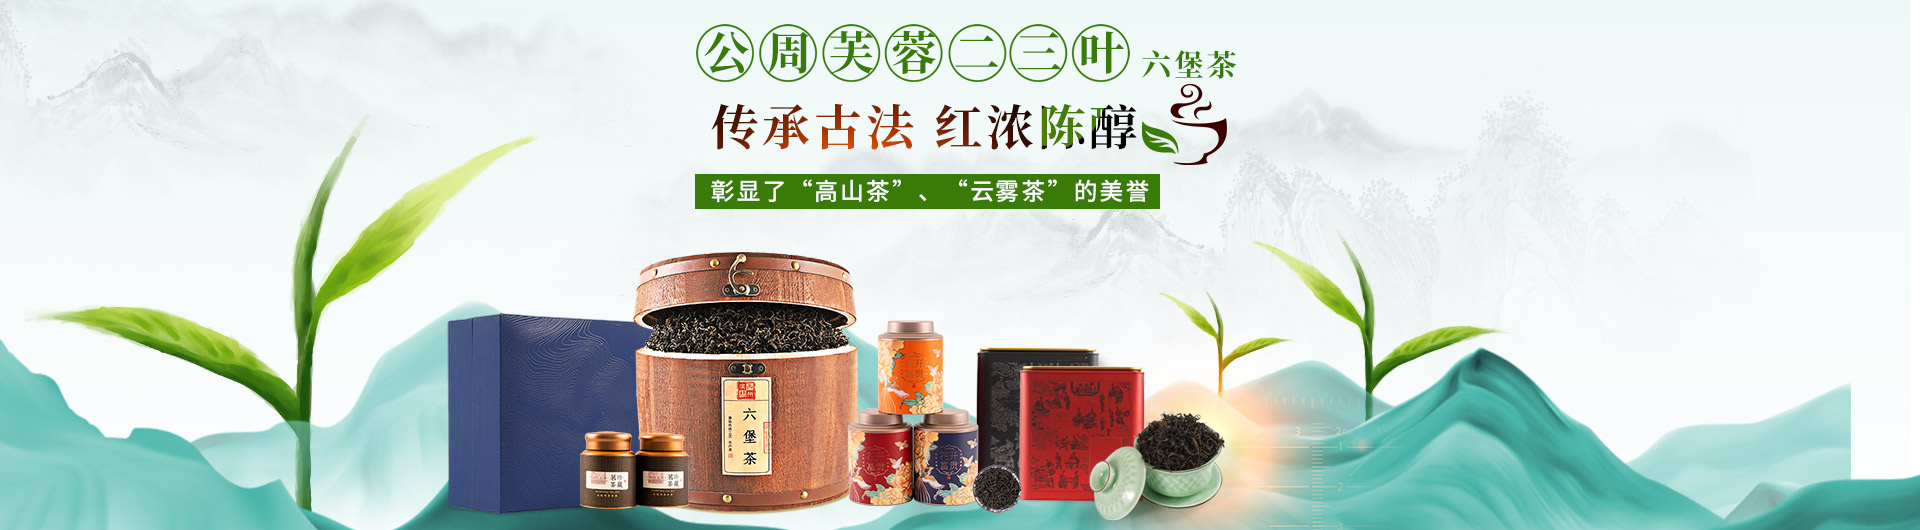 公周芙蓉二三叶六堡茶  传承古法 红浓陈醇 彰显了“高山茶”、“云雾茶”的美誉 